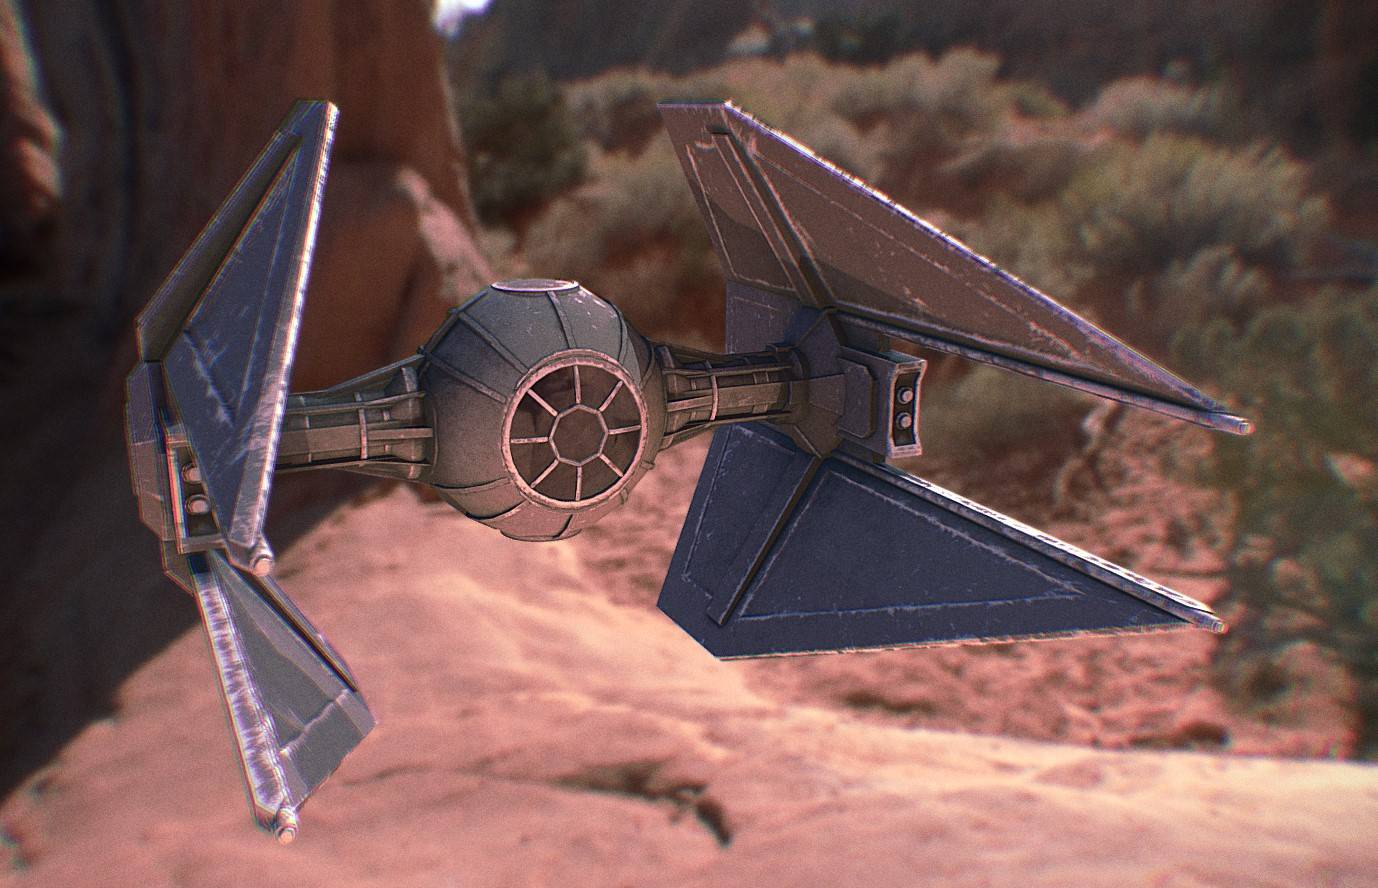 3D Model of a Star Wars Tie Interceptor spaceship